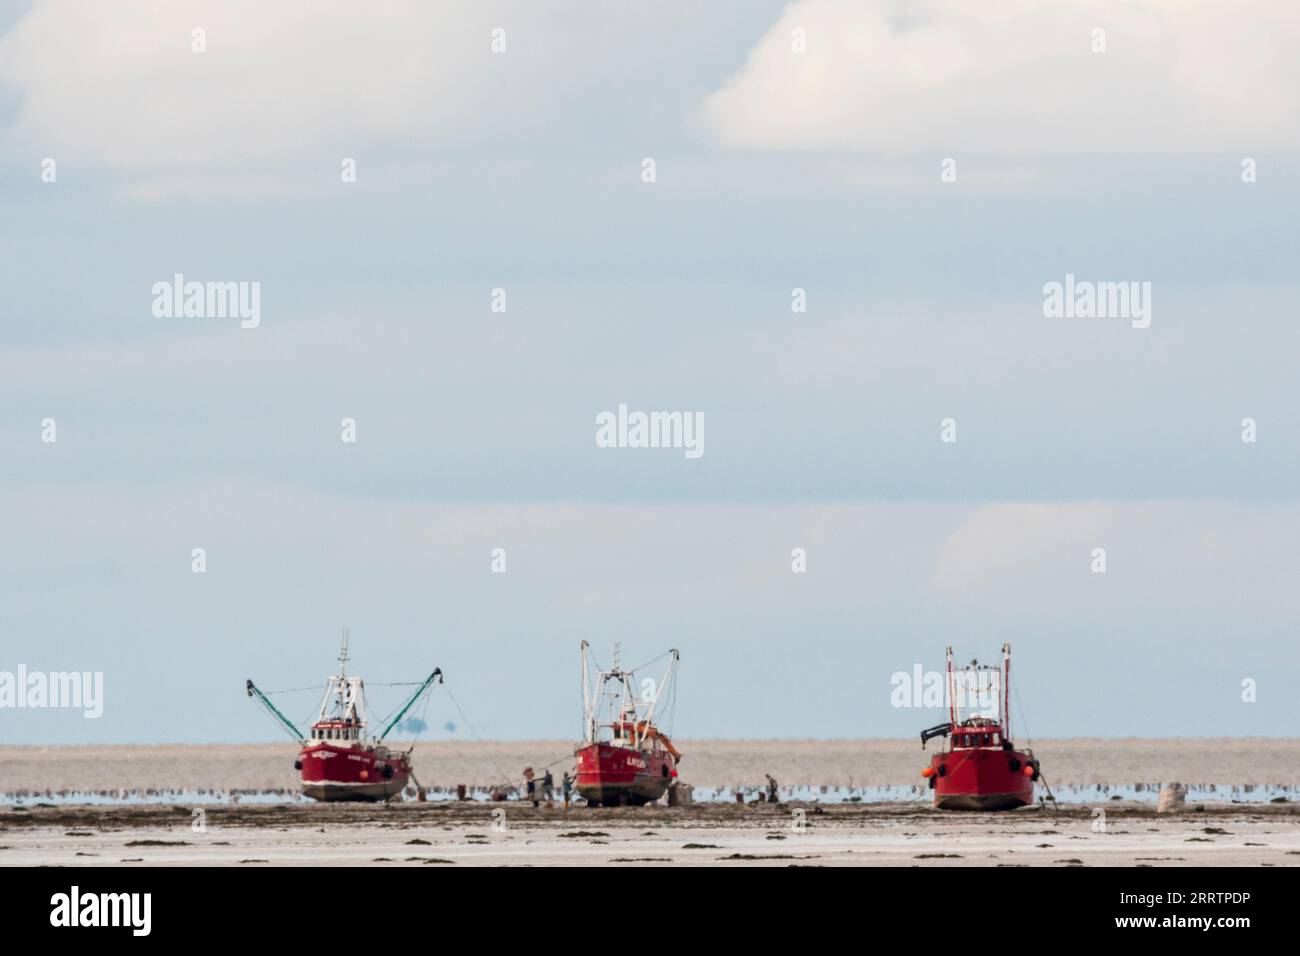 Le barche dei molluschi hanno spiaggiato il Wash per raccogliere i galletti durante la bassa marea. Le barche partono alla prossima alta marea. Foto Stock